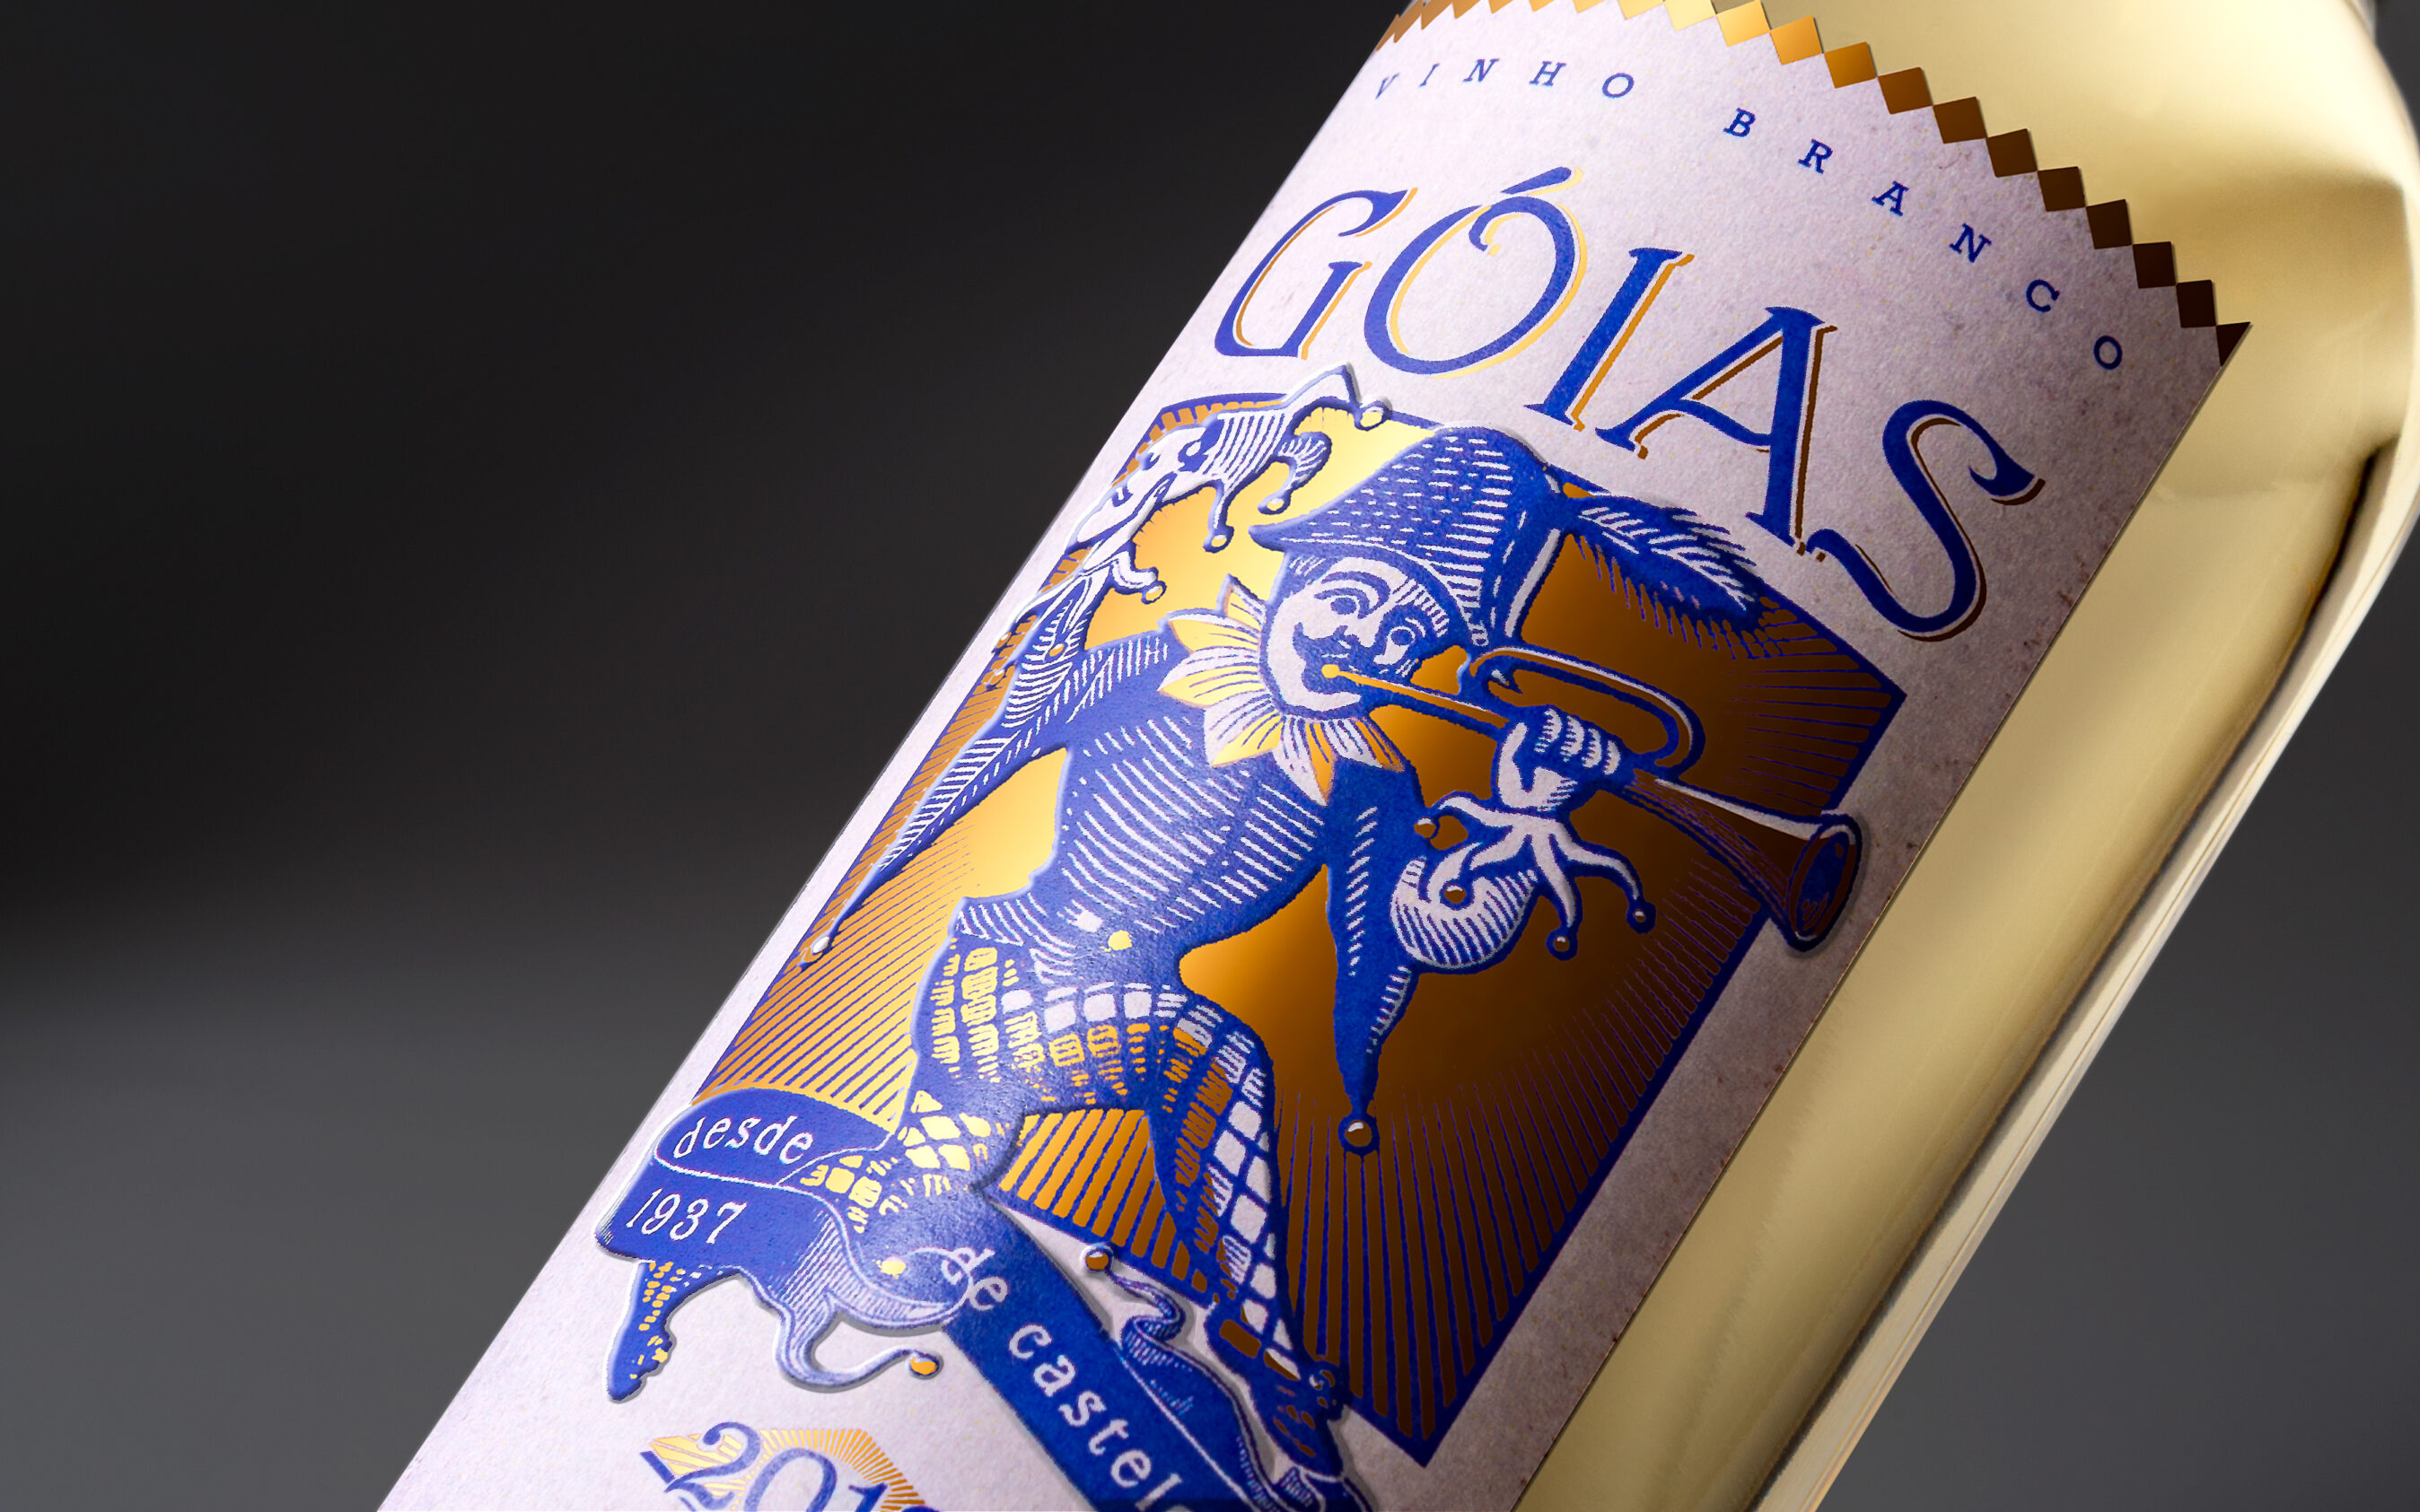 Wein-Etikette Detailaufnahme des Grafik-Designs. Verpackungs-Gestaltung und Branding für die Marke Goias.